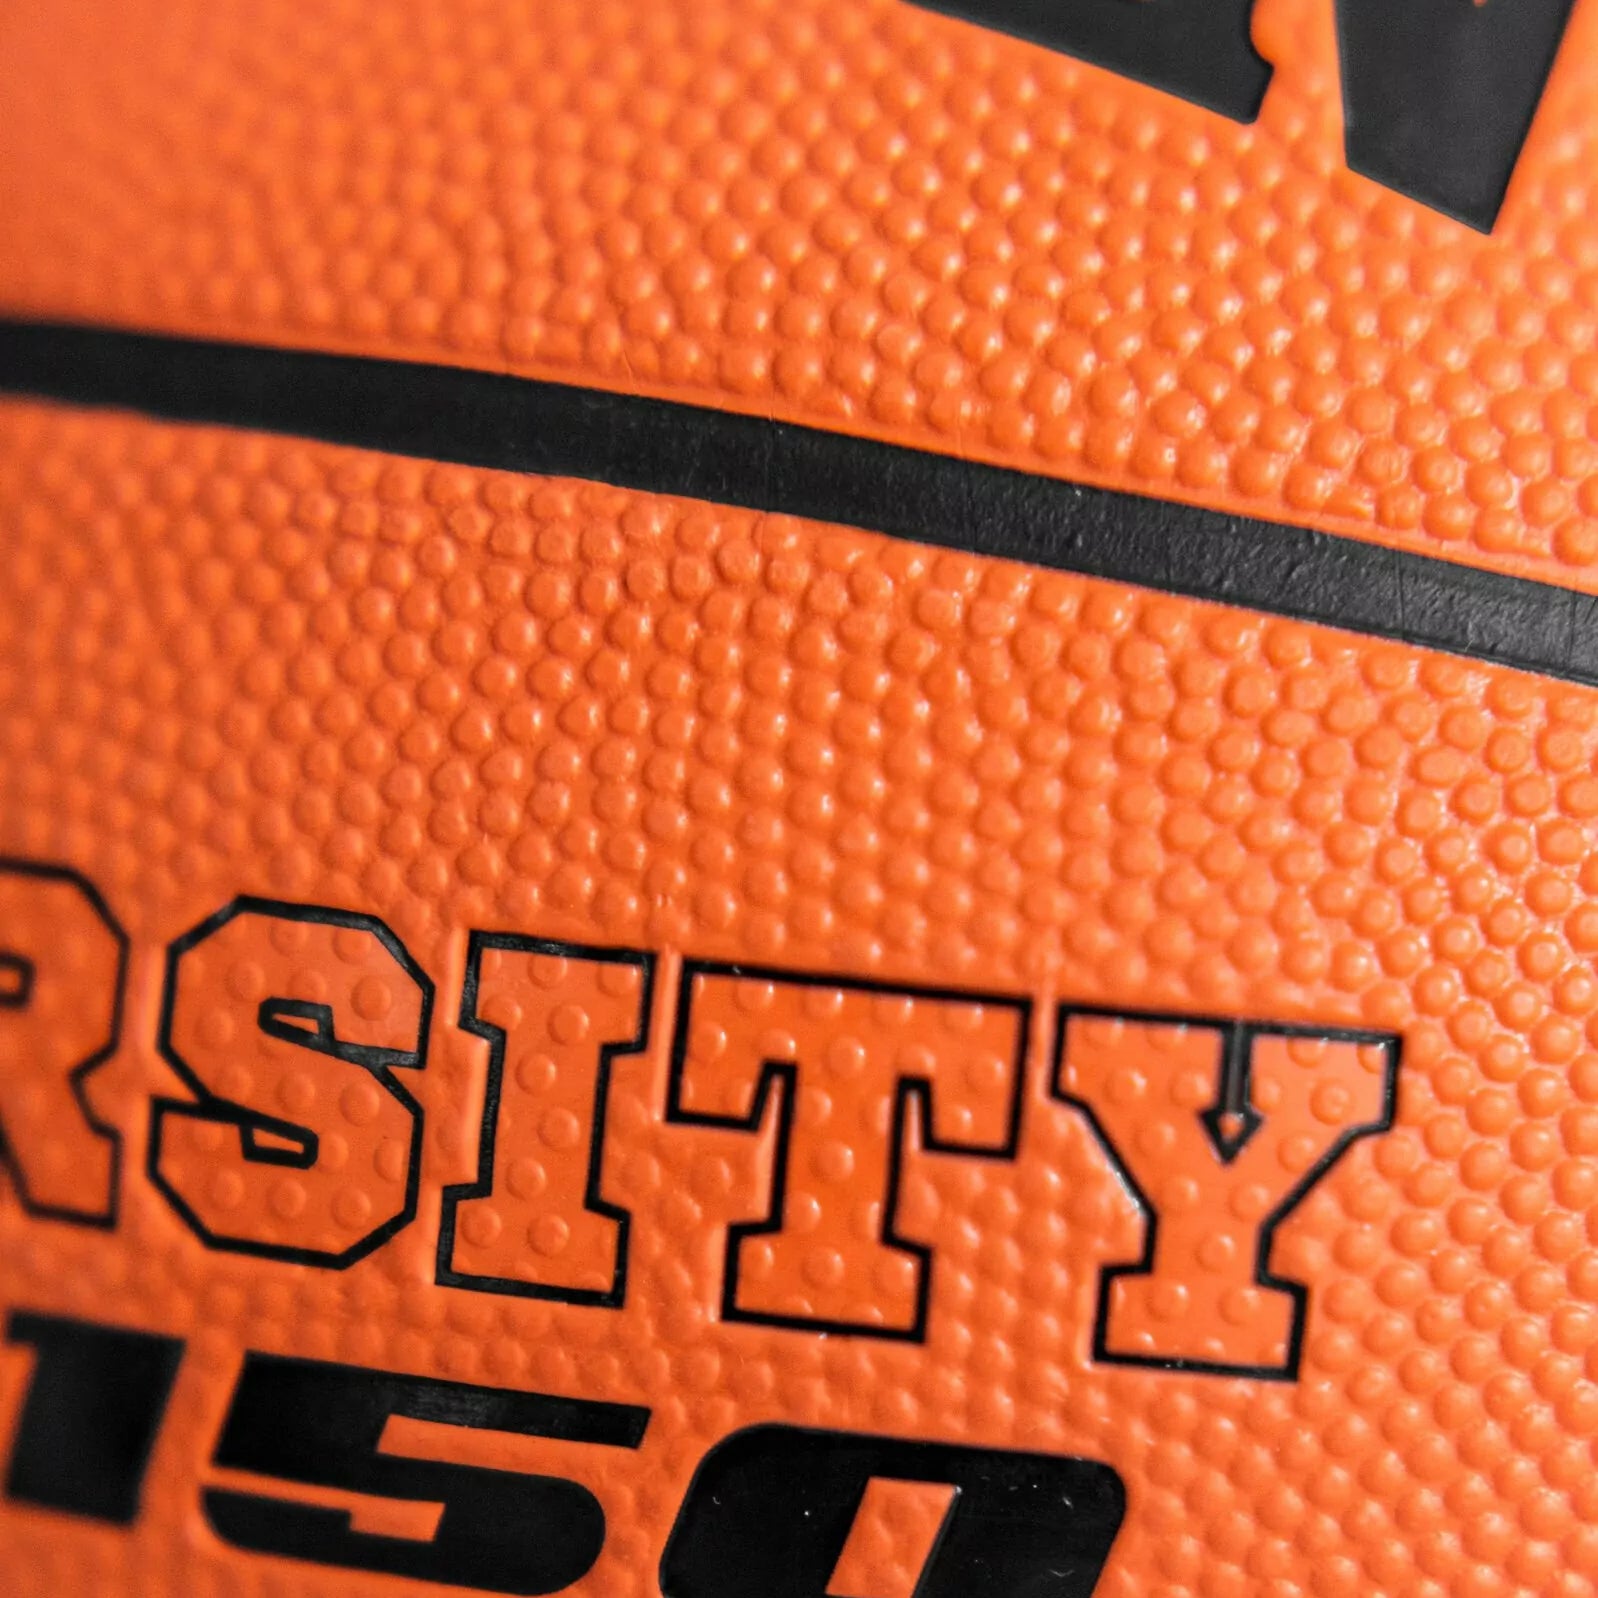 Spalding Varsity FIBA TF-150 Rubber Basketball, Size 7 (Brick) - Best Price online Prokicksports.com